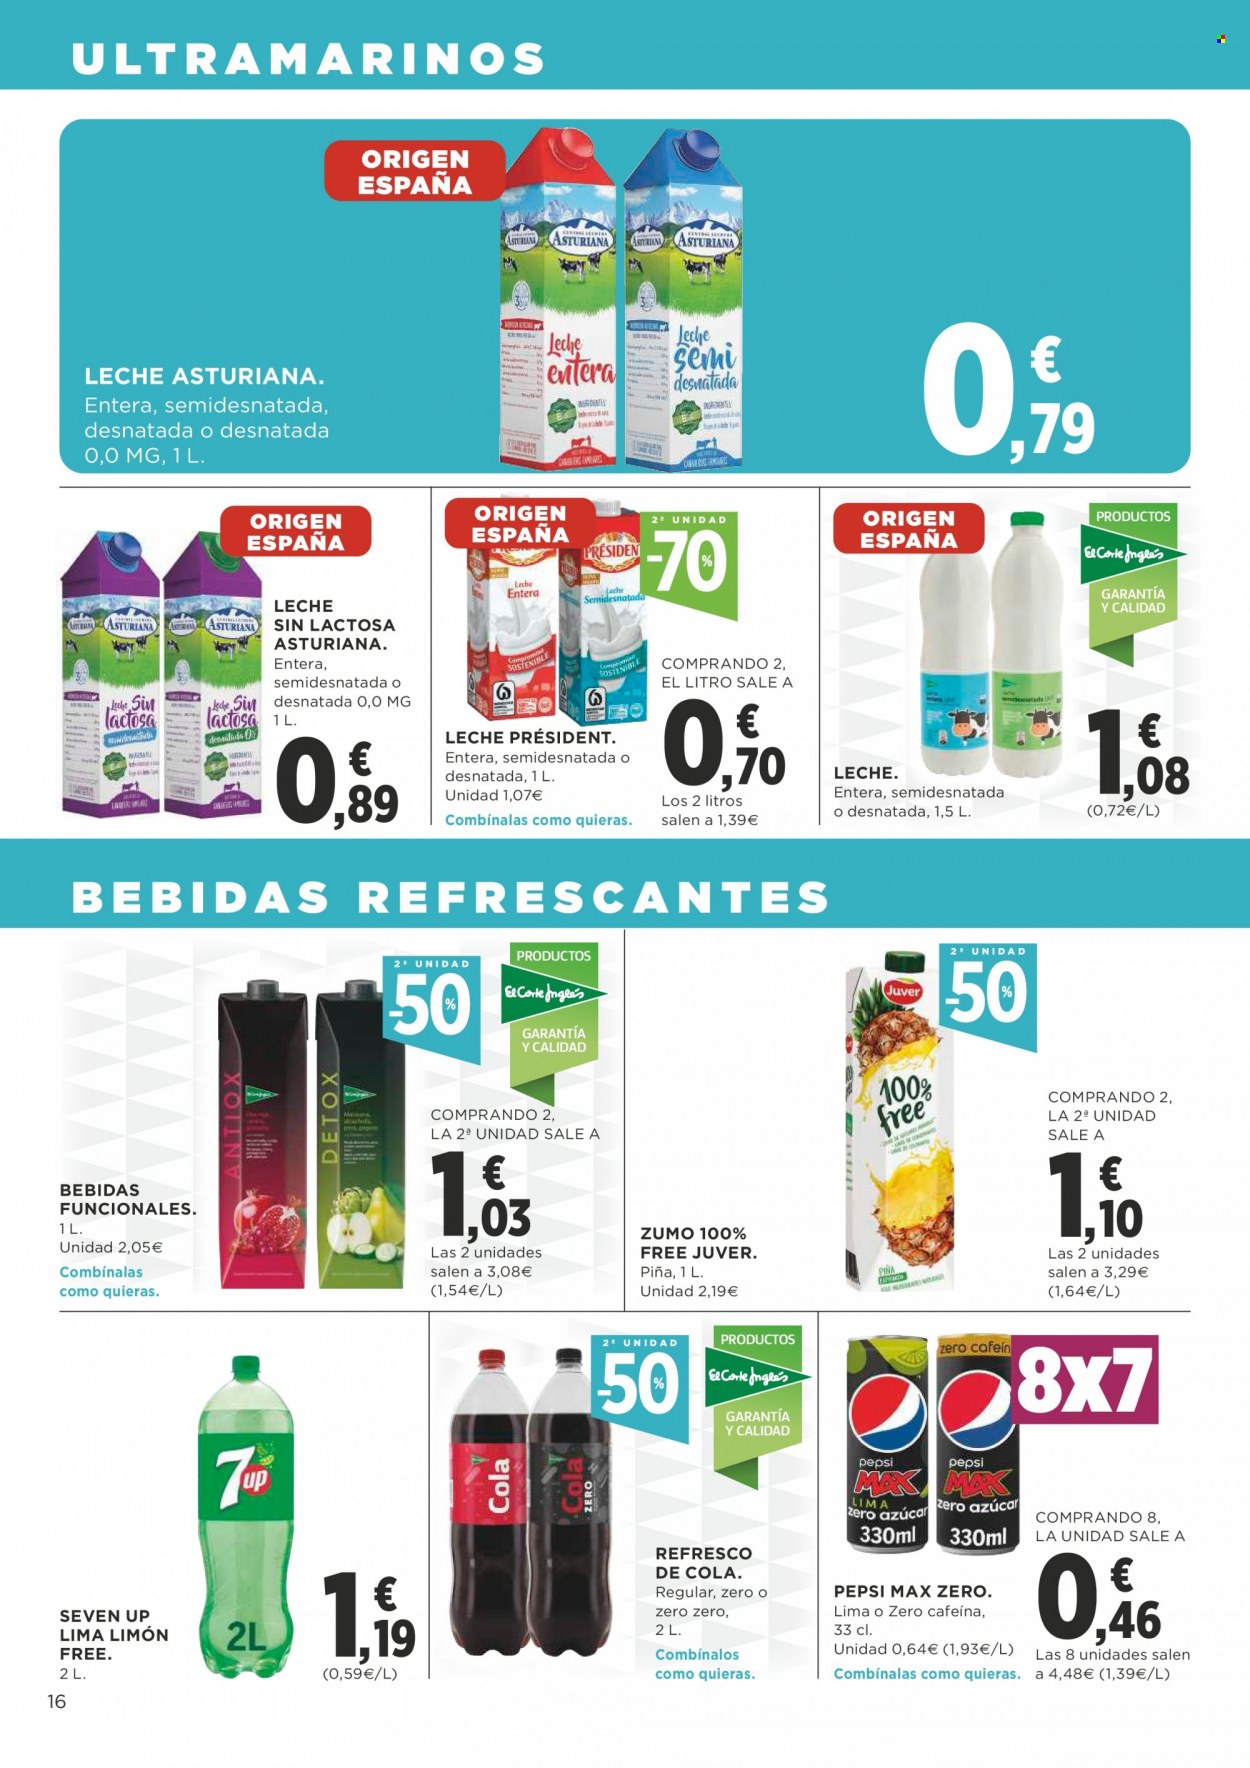 thumbnail - Folleto actual Supercor supermercados - 13/01/22 - 26/01/22 - Ventas - leche sin lactosa, leche, zumo, refresco, bebida, Pepsi, 7UP. Página 16.